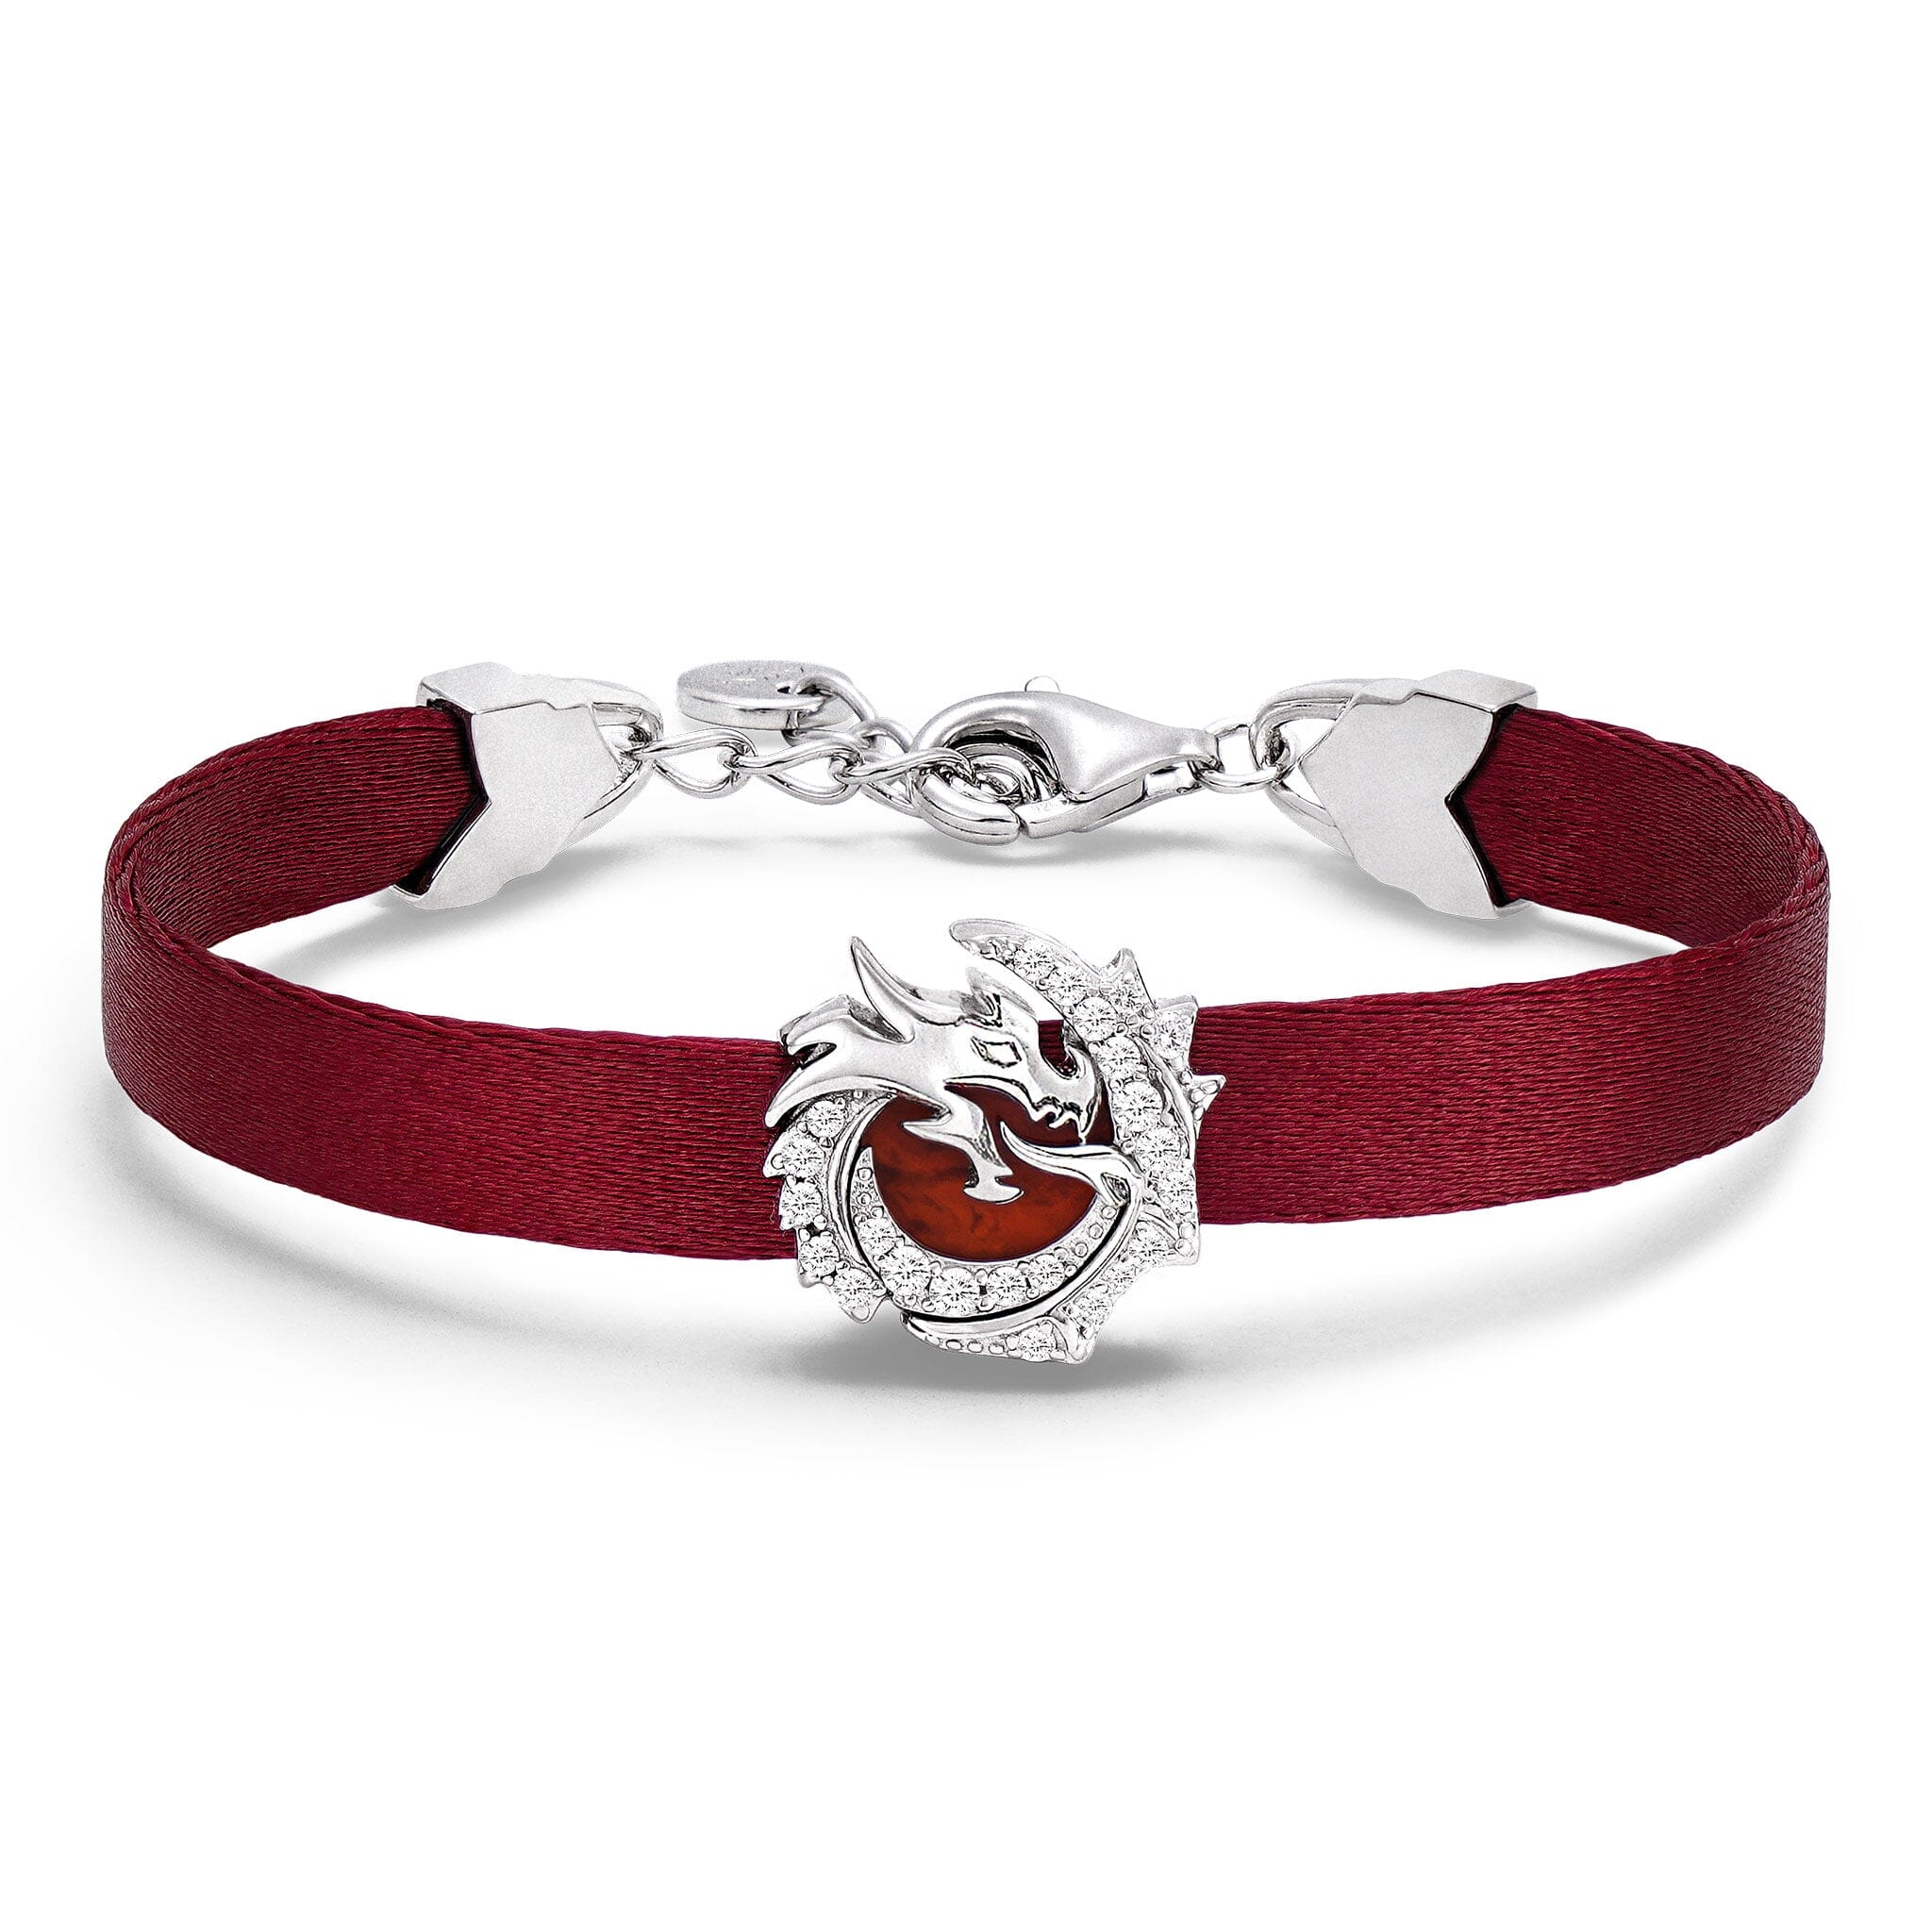 Awnl Women's Red Agate Dragon Ribbon Bracelet